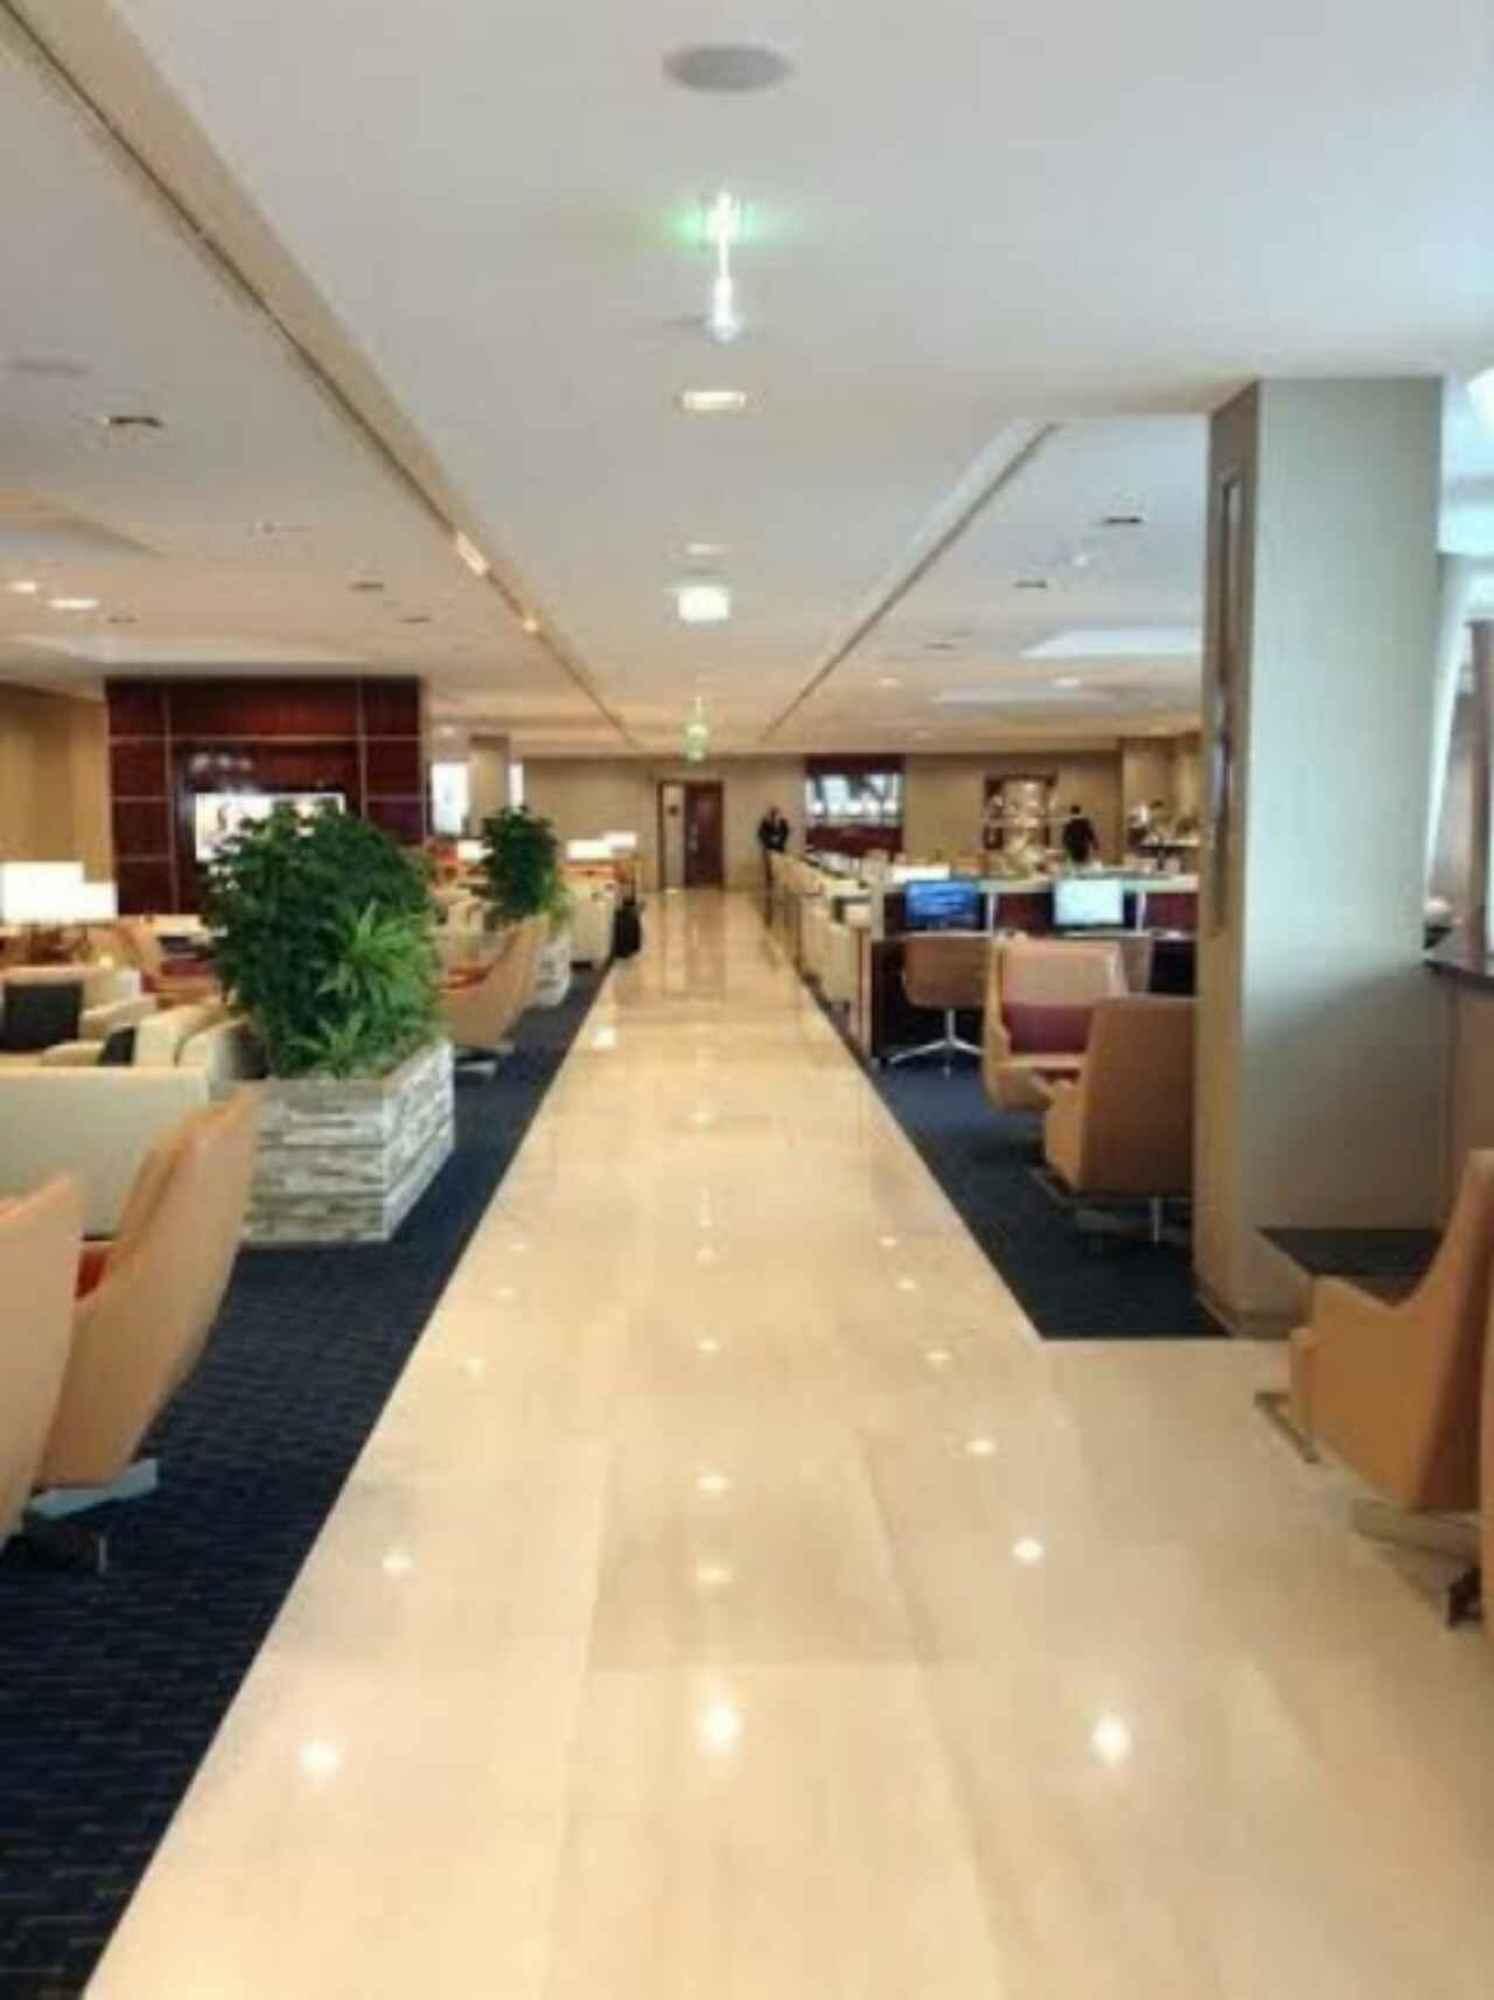 The Emirates Lounge image 6 of 9